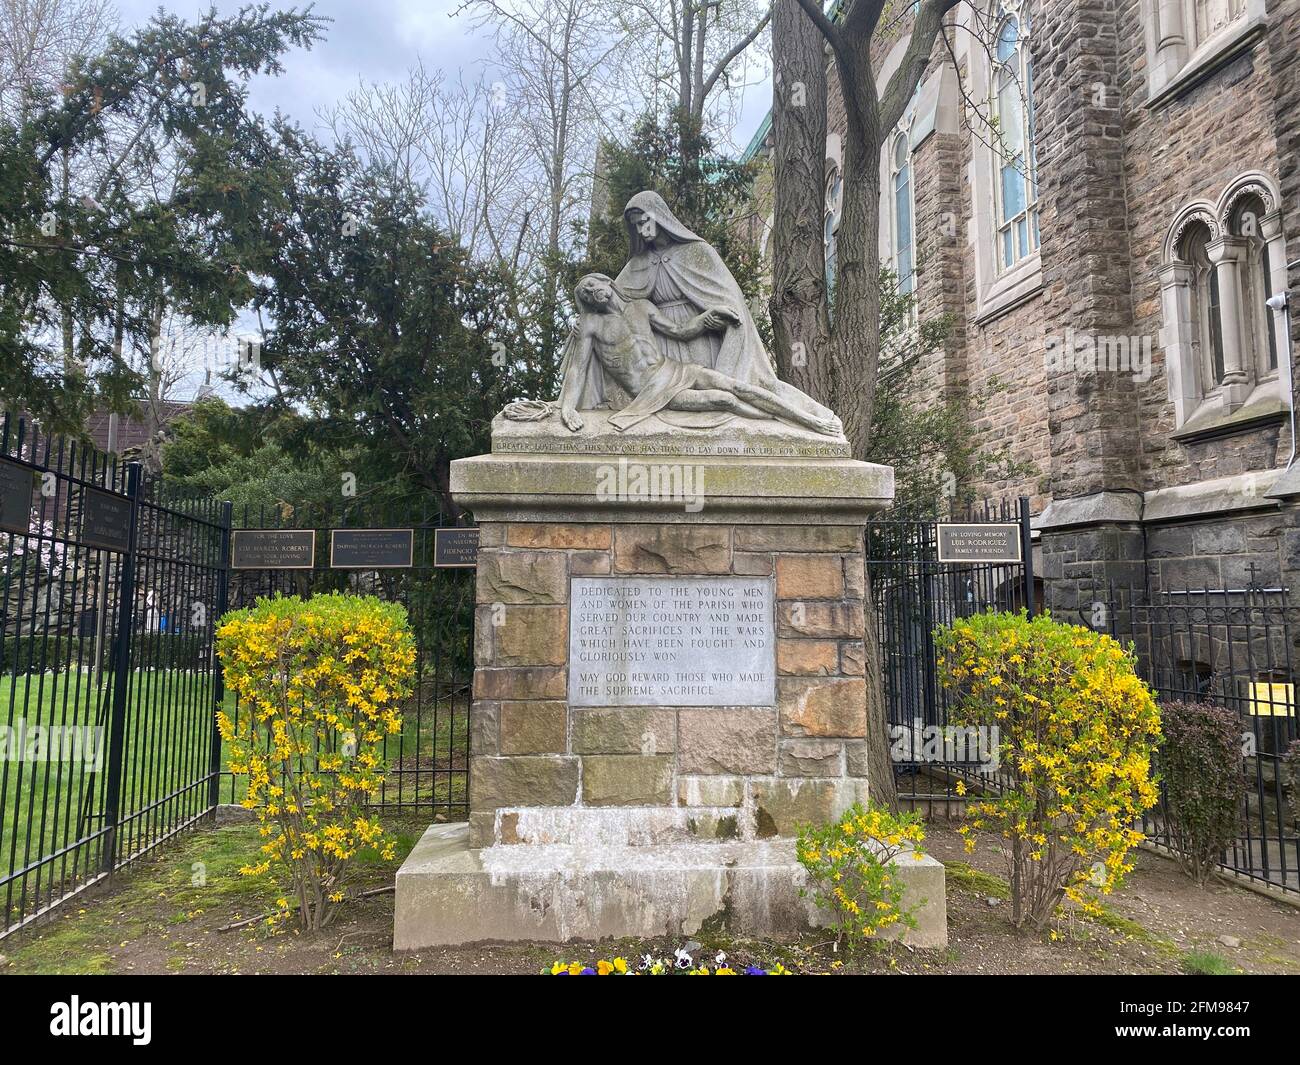 Pieta-Statue vor einer katholischen Kirche im Borough Park, Brooklyn, gewidmet amerikanischen Soldaten, die ihr Leben in verschiedenen Kriegen des 20. Jahrhunderts geopfert haben. Stockfoto